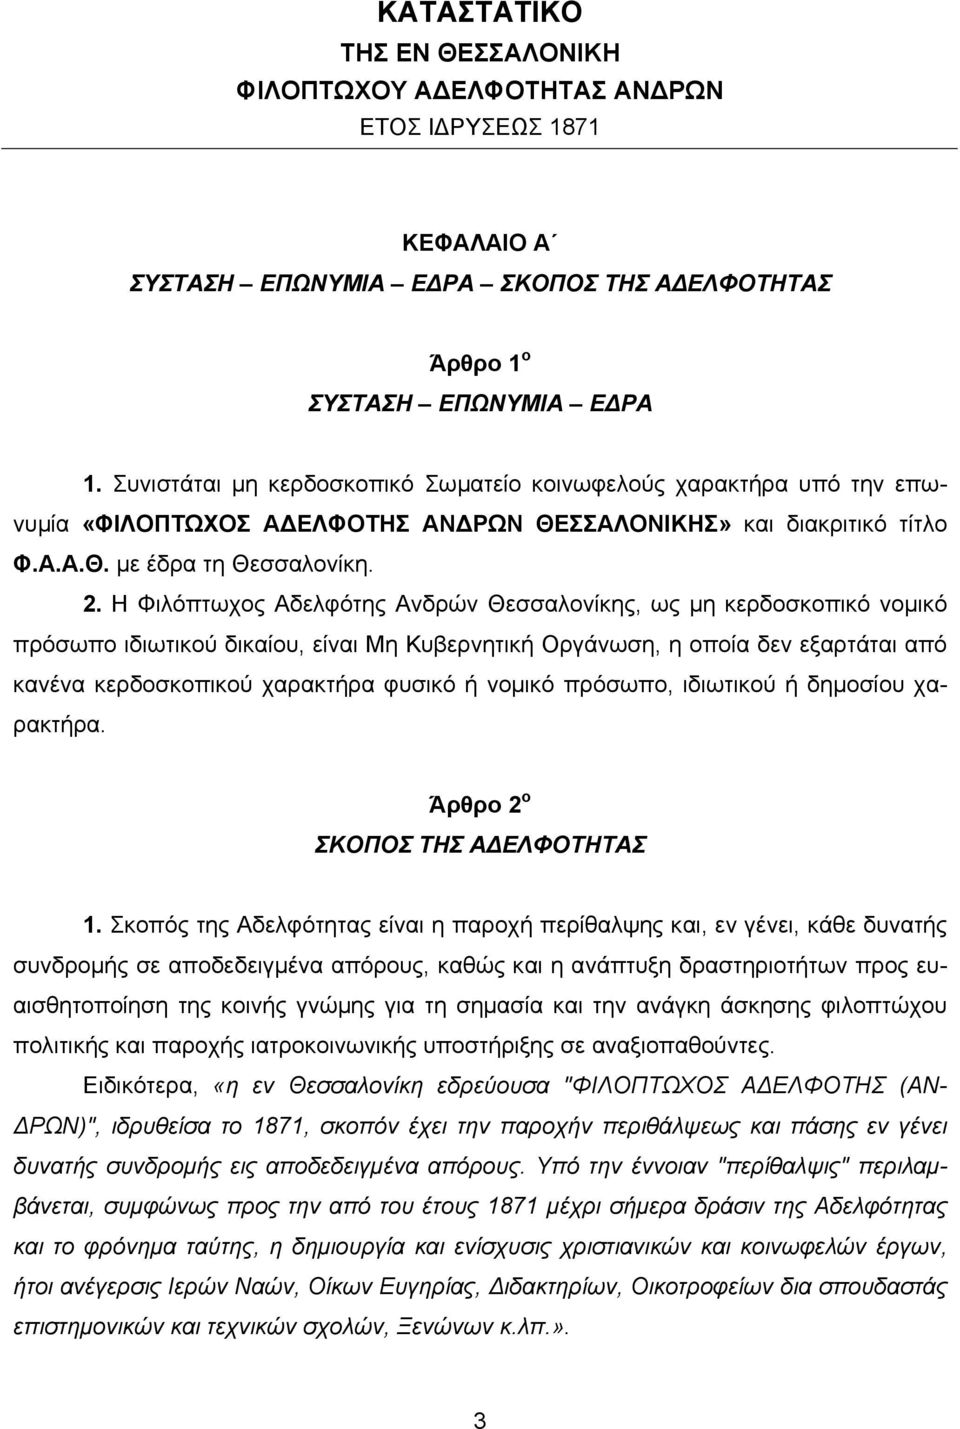 Η Φιλόπτωχος Αδελφότης Ανδρών Θεσσαλονίκης, ως µη κερδοσκοπικό νοµικό πρόσωπο ιδιωτικού δικαίου, είναι Μη Κυβερνητική Οργάνωση, η οποία δεν εξαρτάται από κανένα κερδοσκοπικού χαρακτήρα φυσικό ή